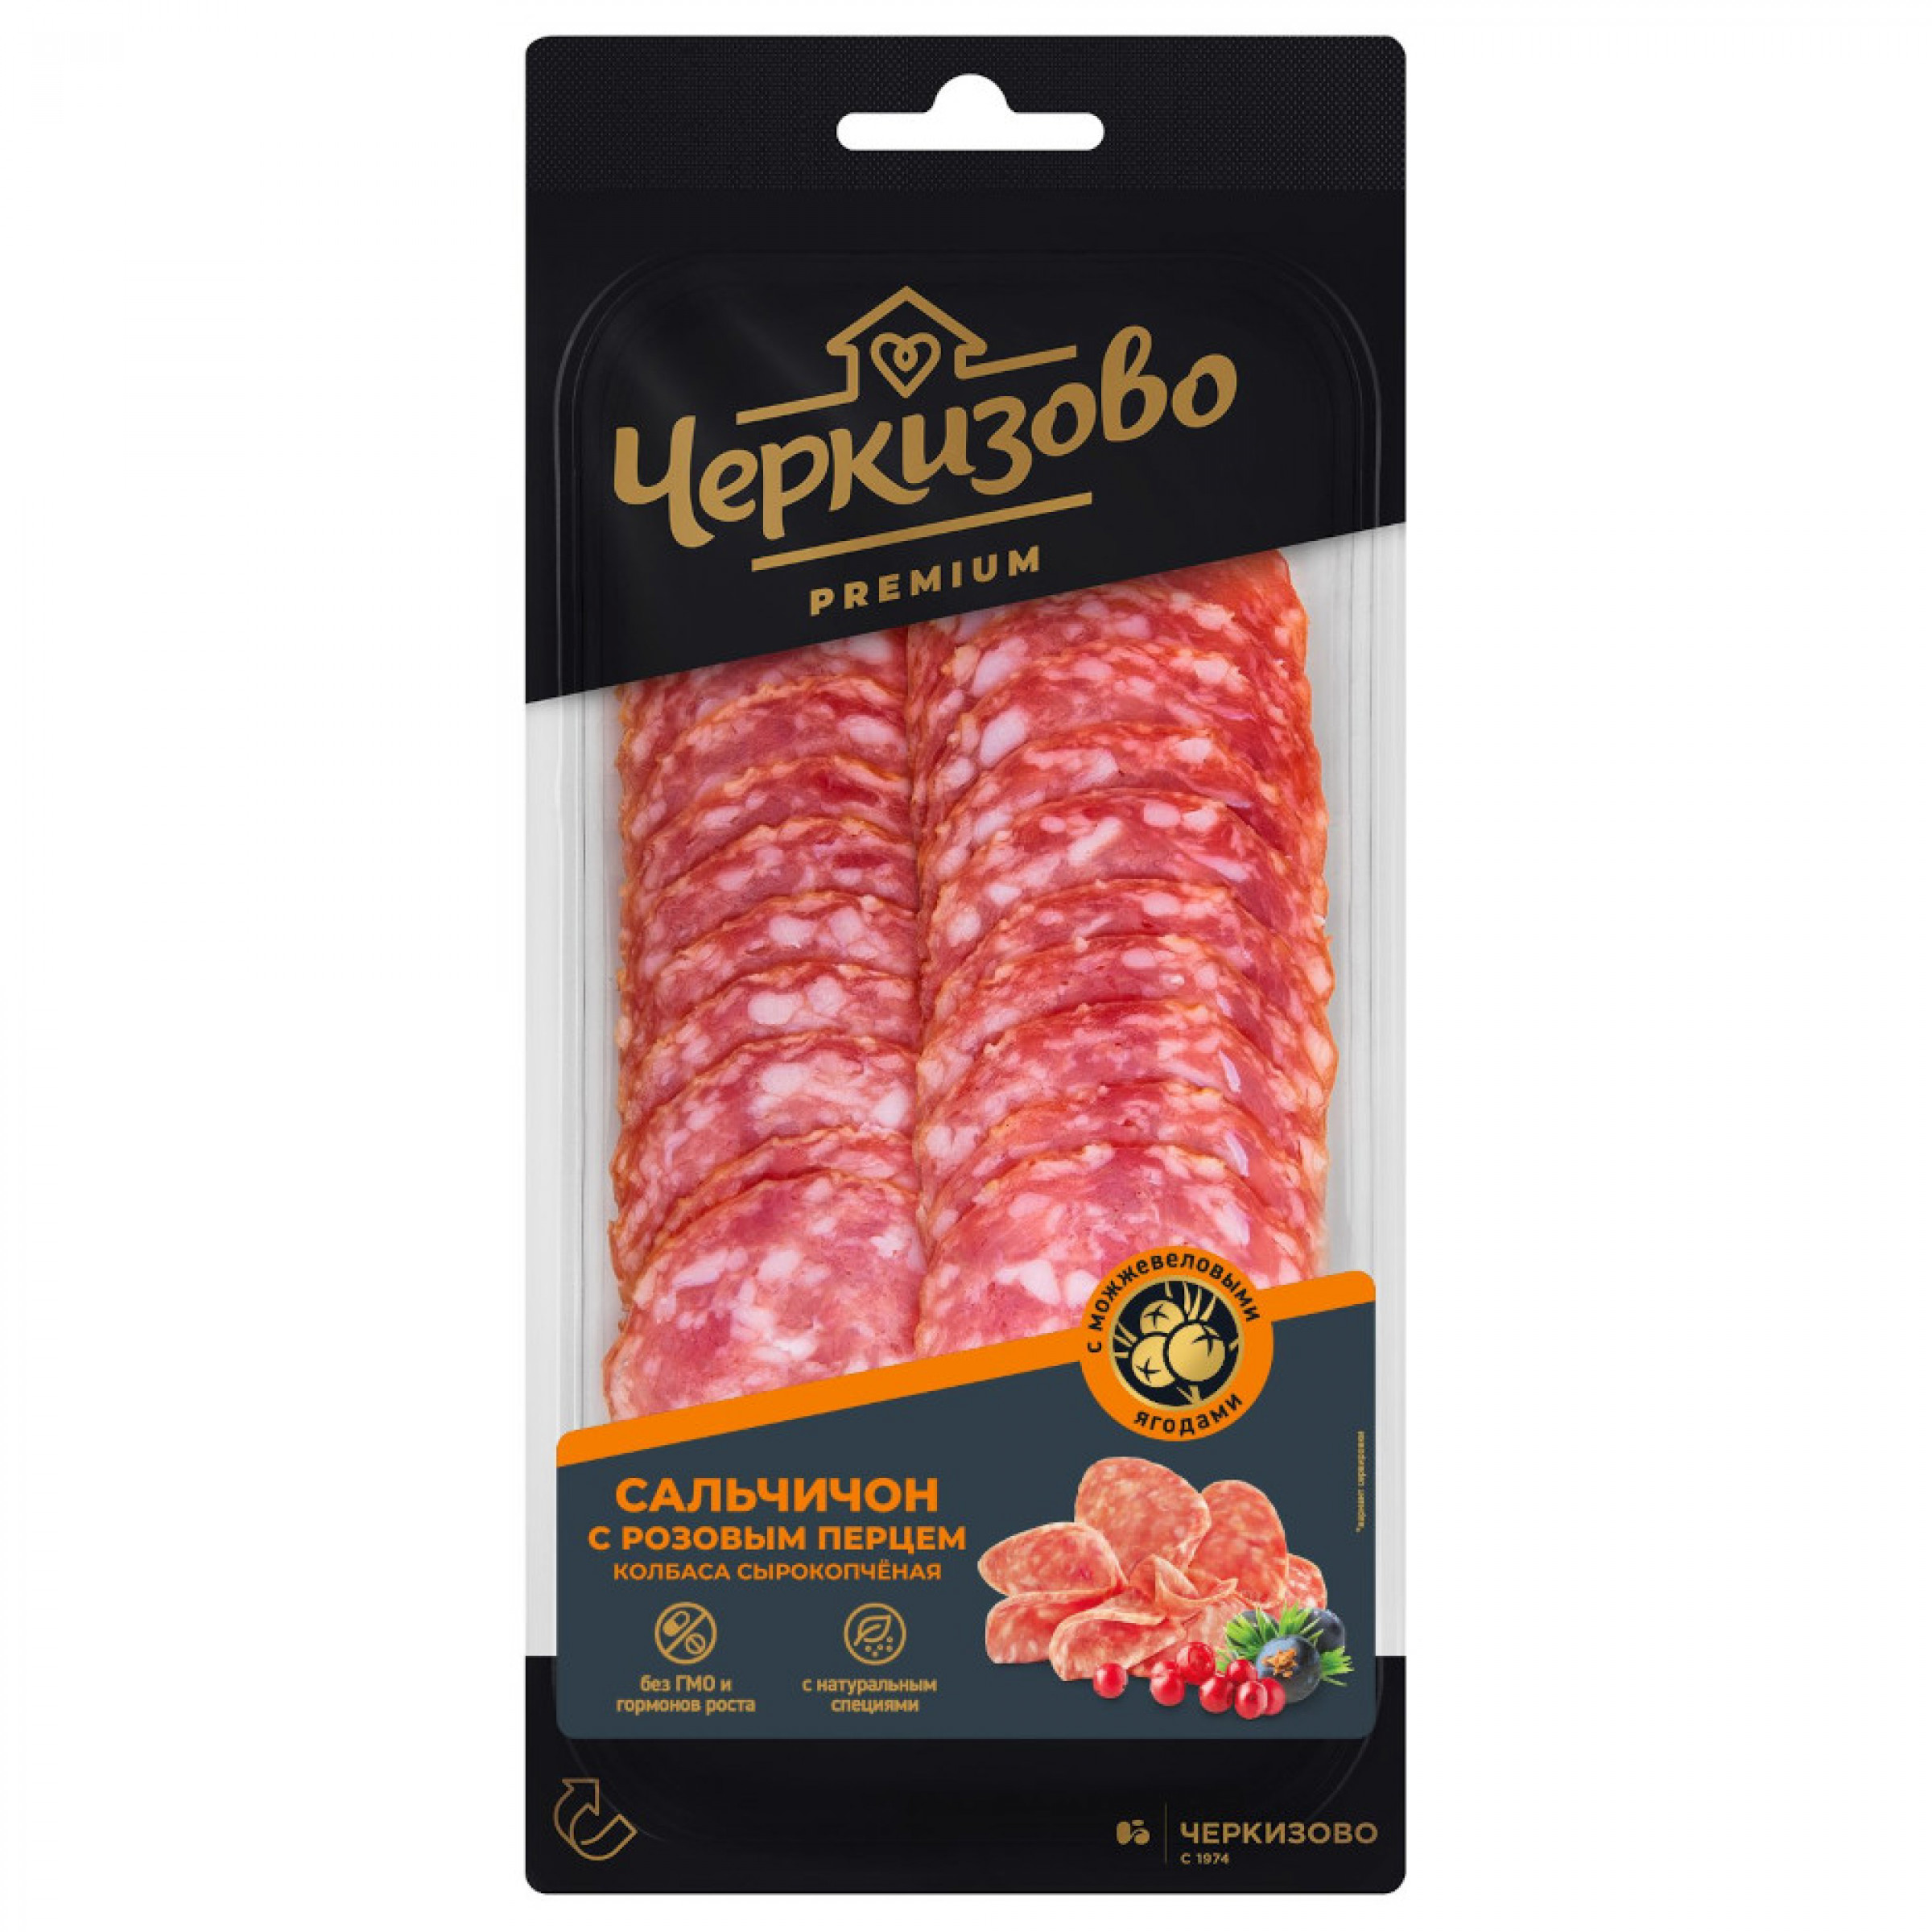 Сырокопченая колбаса Сальчичон с розовым перцем Черкизово (средний вес: 85 г)